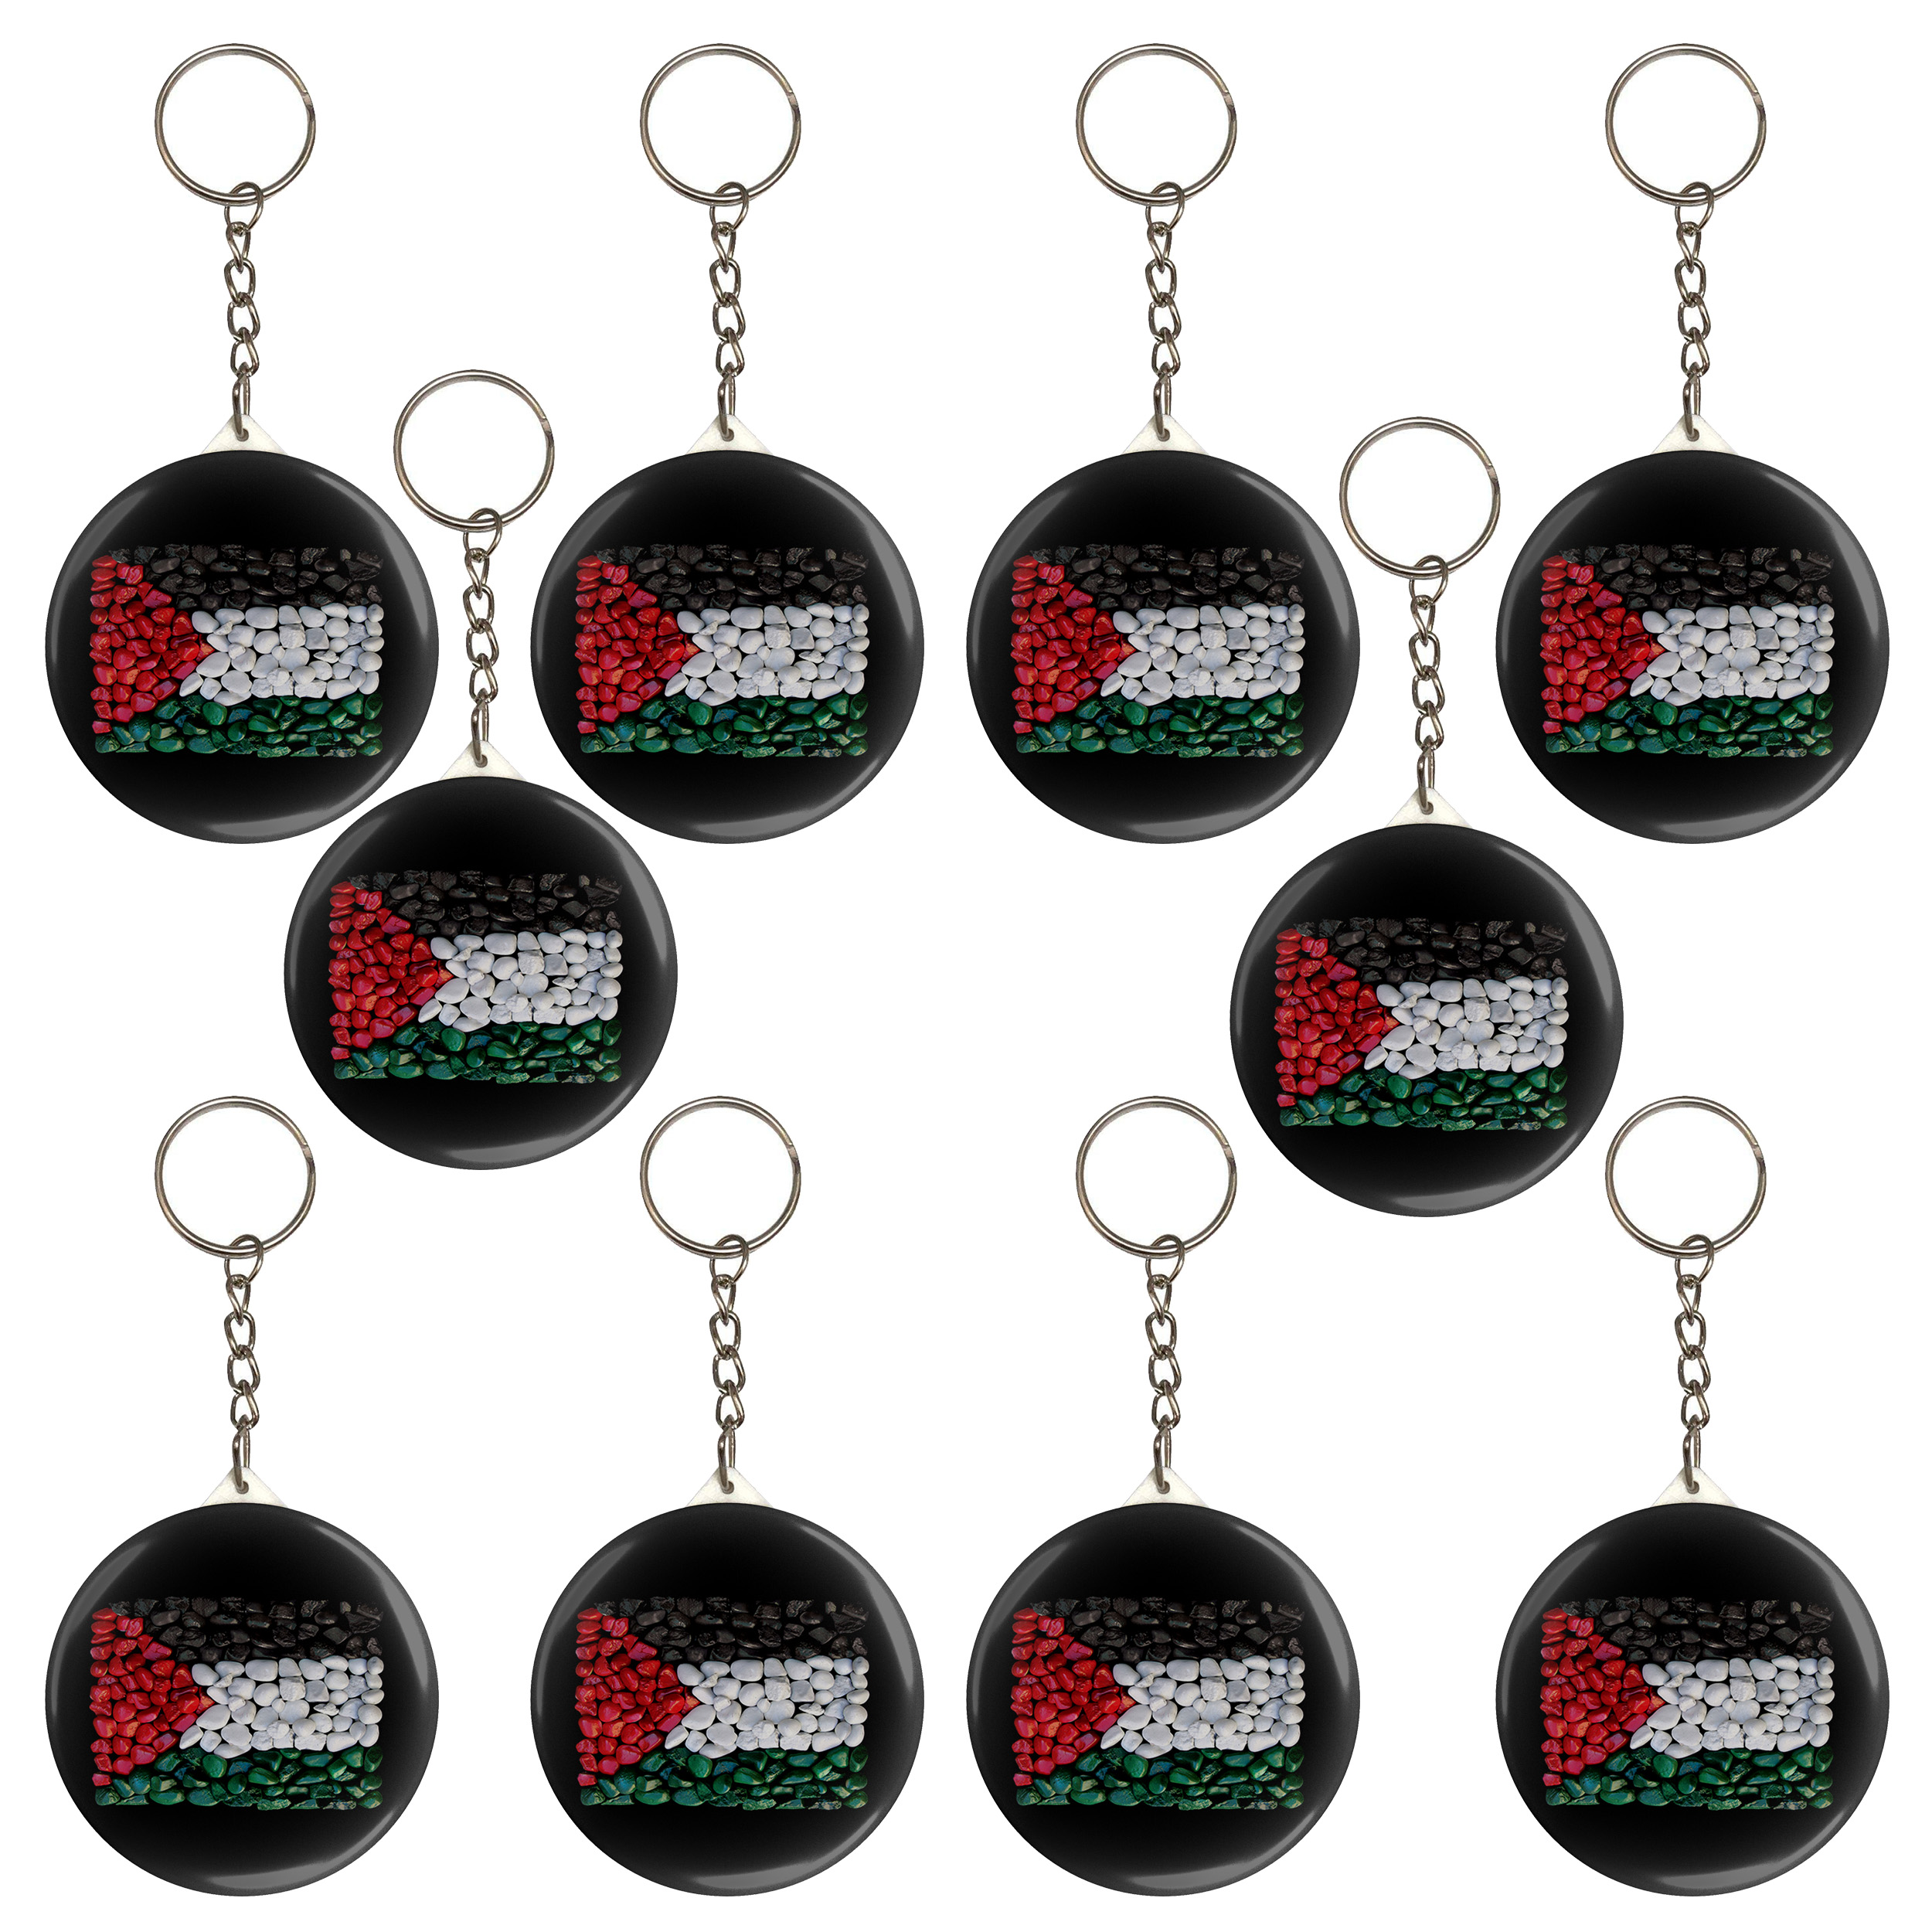 جاکلیدی مدل پرچم فلسطین کد S5-10 مجموعه 10 عددی